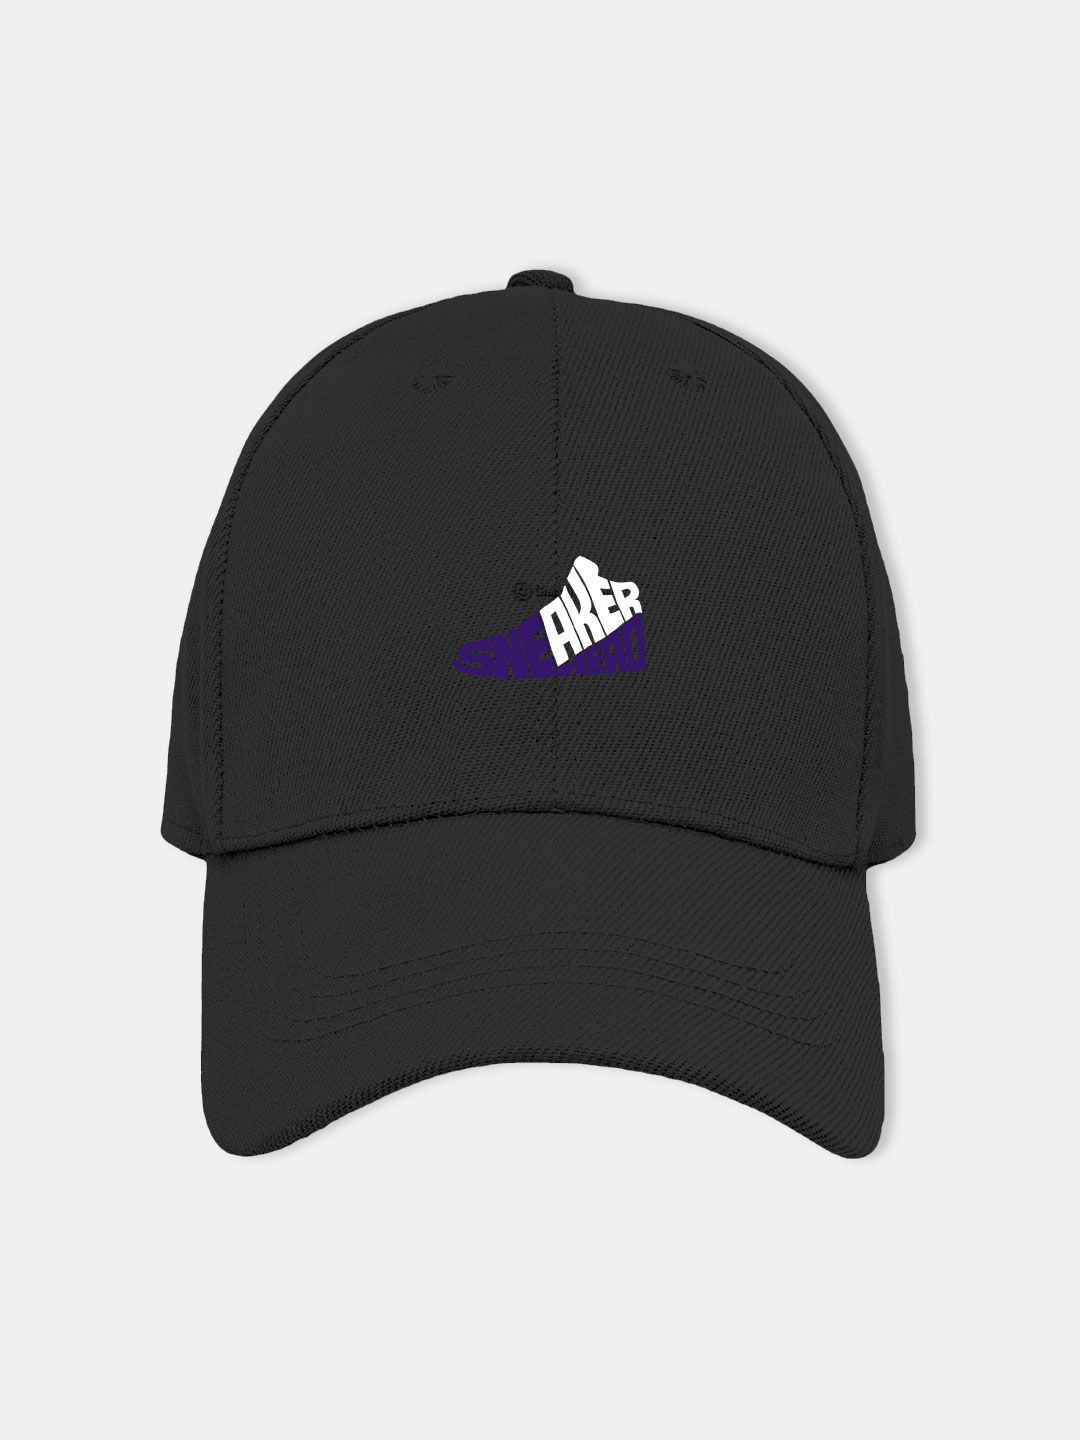 Buy Sneakerhead Court Purple - Cap Black Cap Online